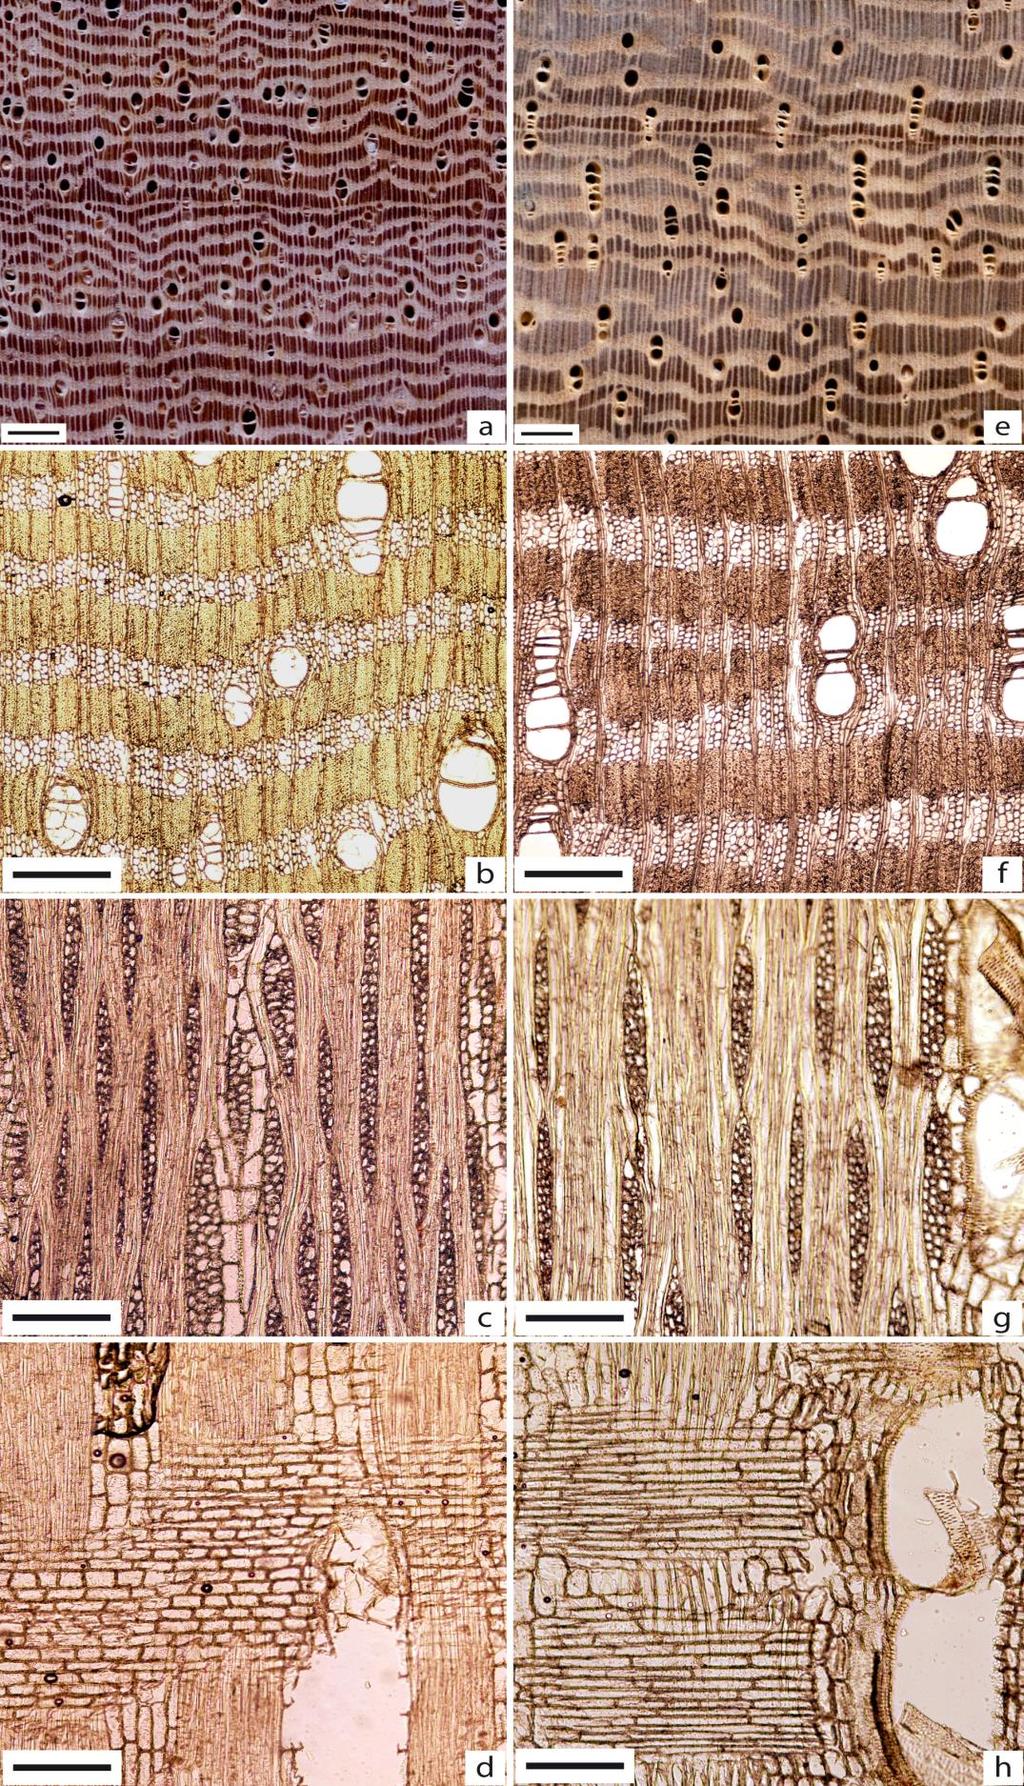 Figura 97 - Imagens comparativas dos gêneros Moronobea pulchra (a d) e